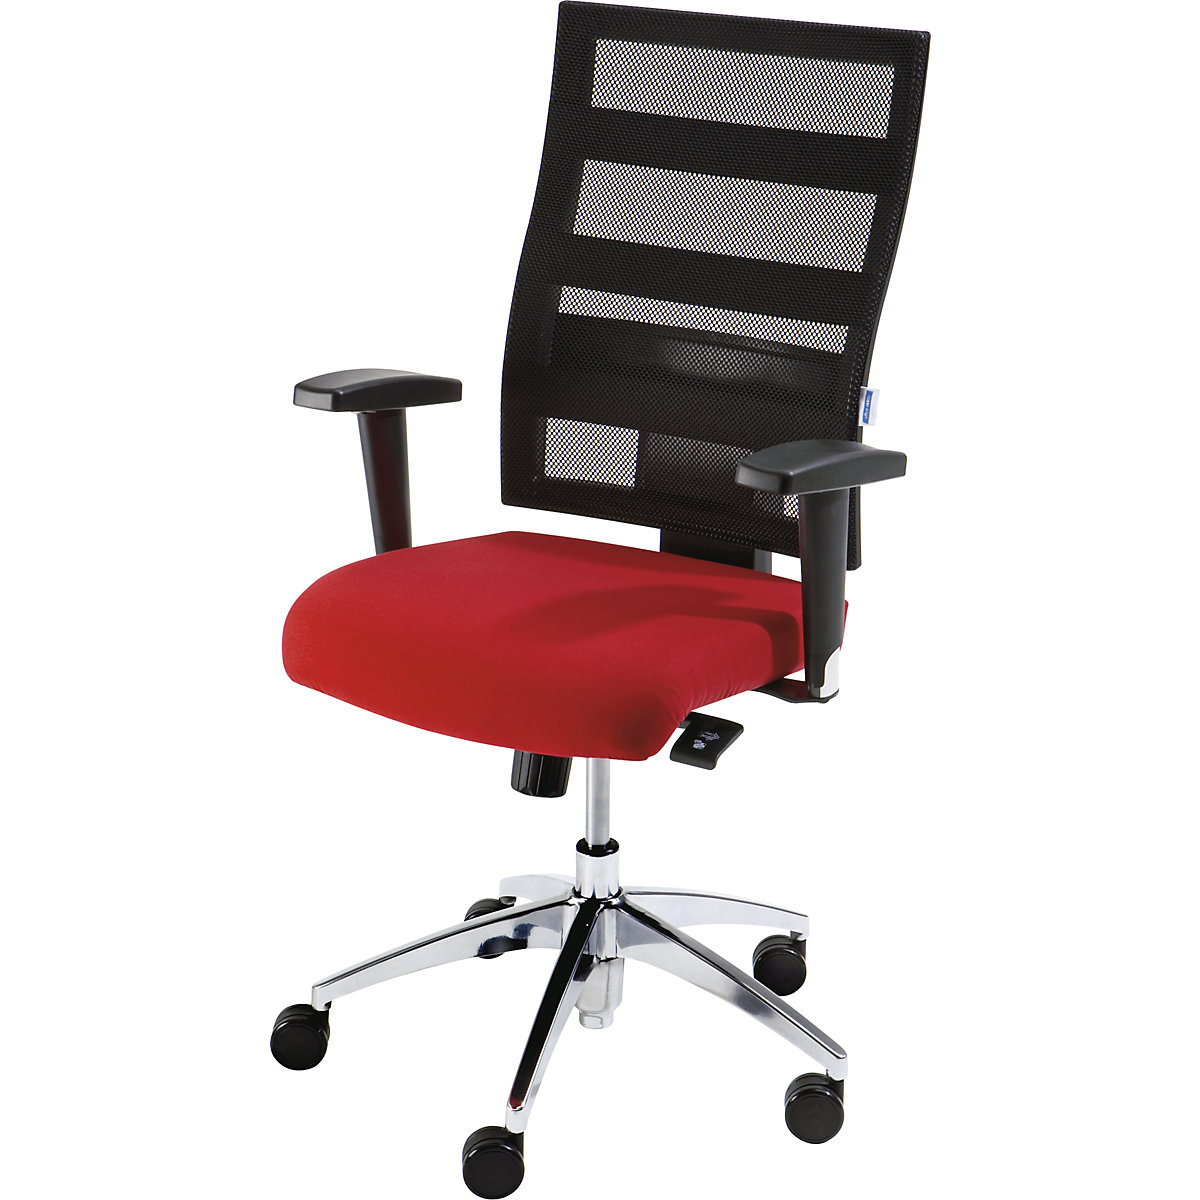 EUROKRAFTpro – Udoben vrtljiv stol, višina naslonjala za hrbet 550 mm, točkovna sinhrona mehanika, ploski sedež, rdeč sedež, črno mrežasto naslonjalo